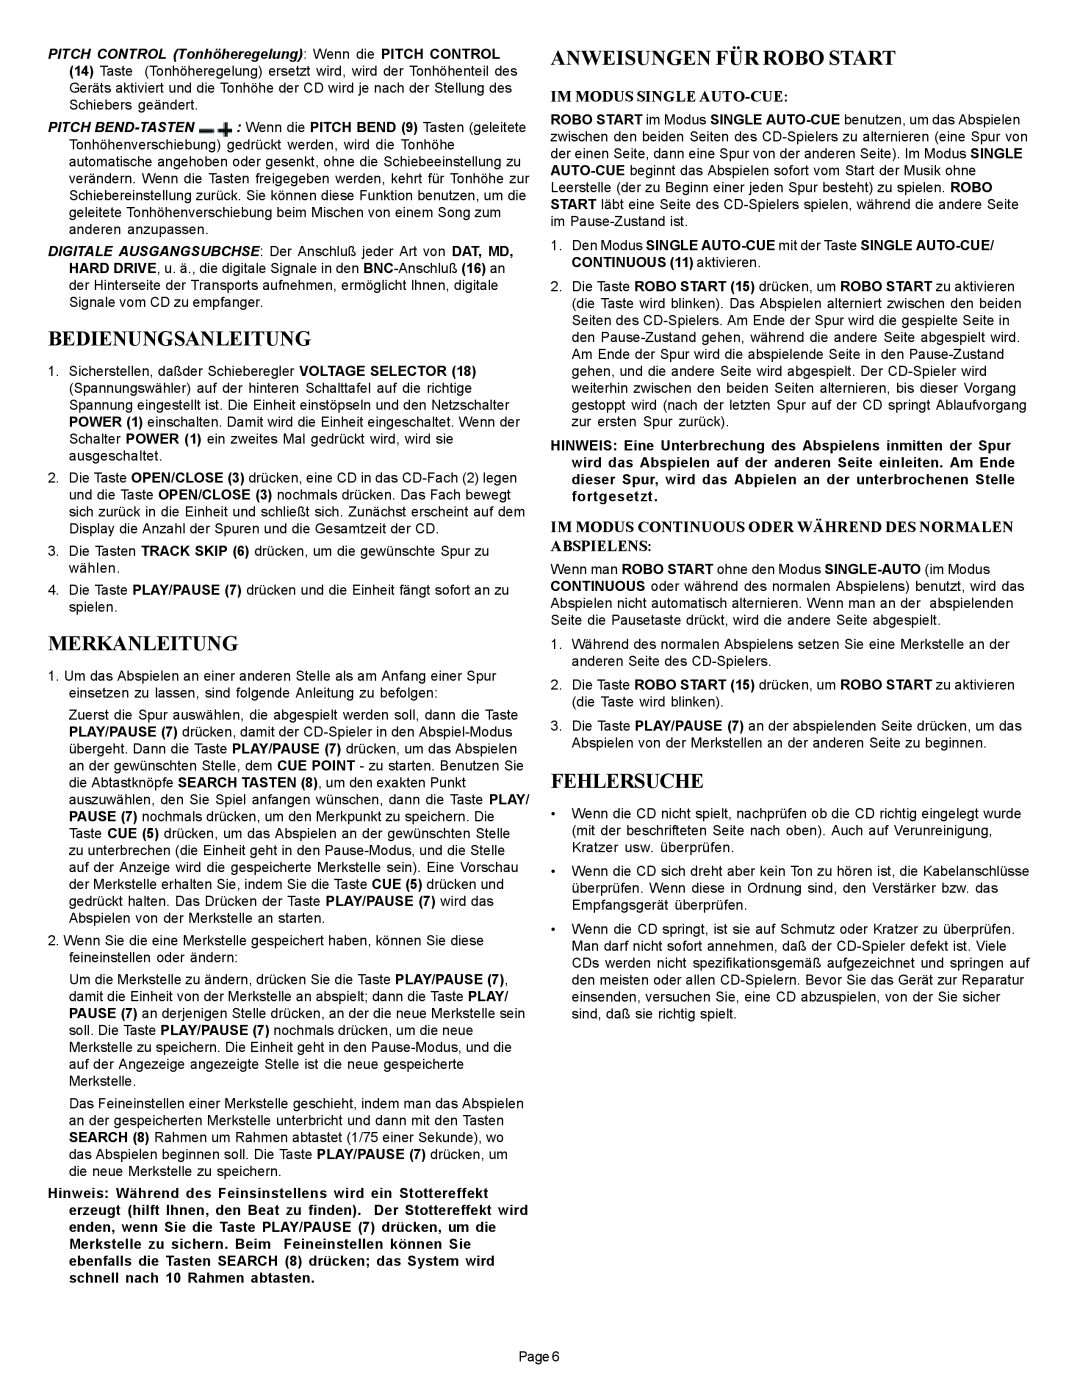 Gemini CD-210 manual Bedienungsanleitung, Merkanleitung, Anweisungen Für Robo Start, Fehlersuche, Im Modus Single Auto-Cue 